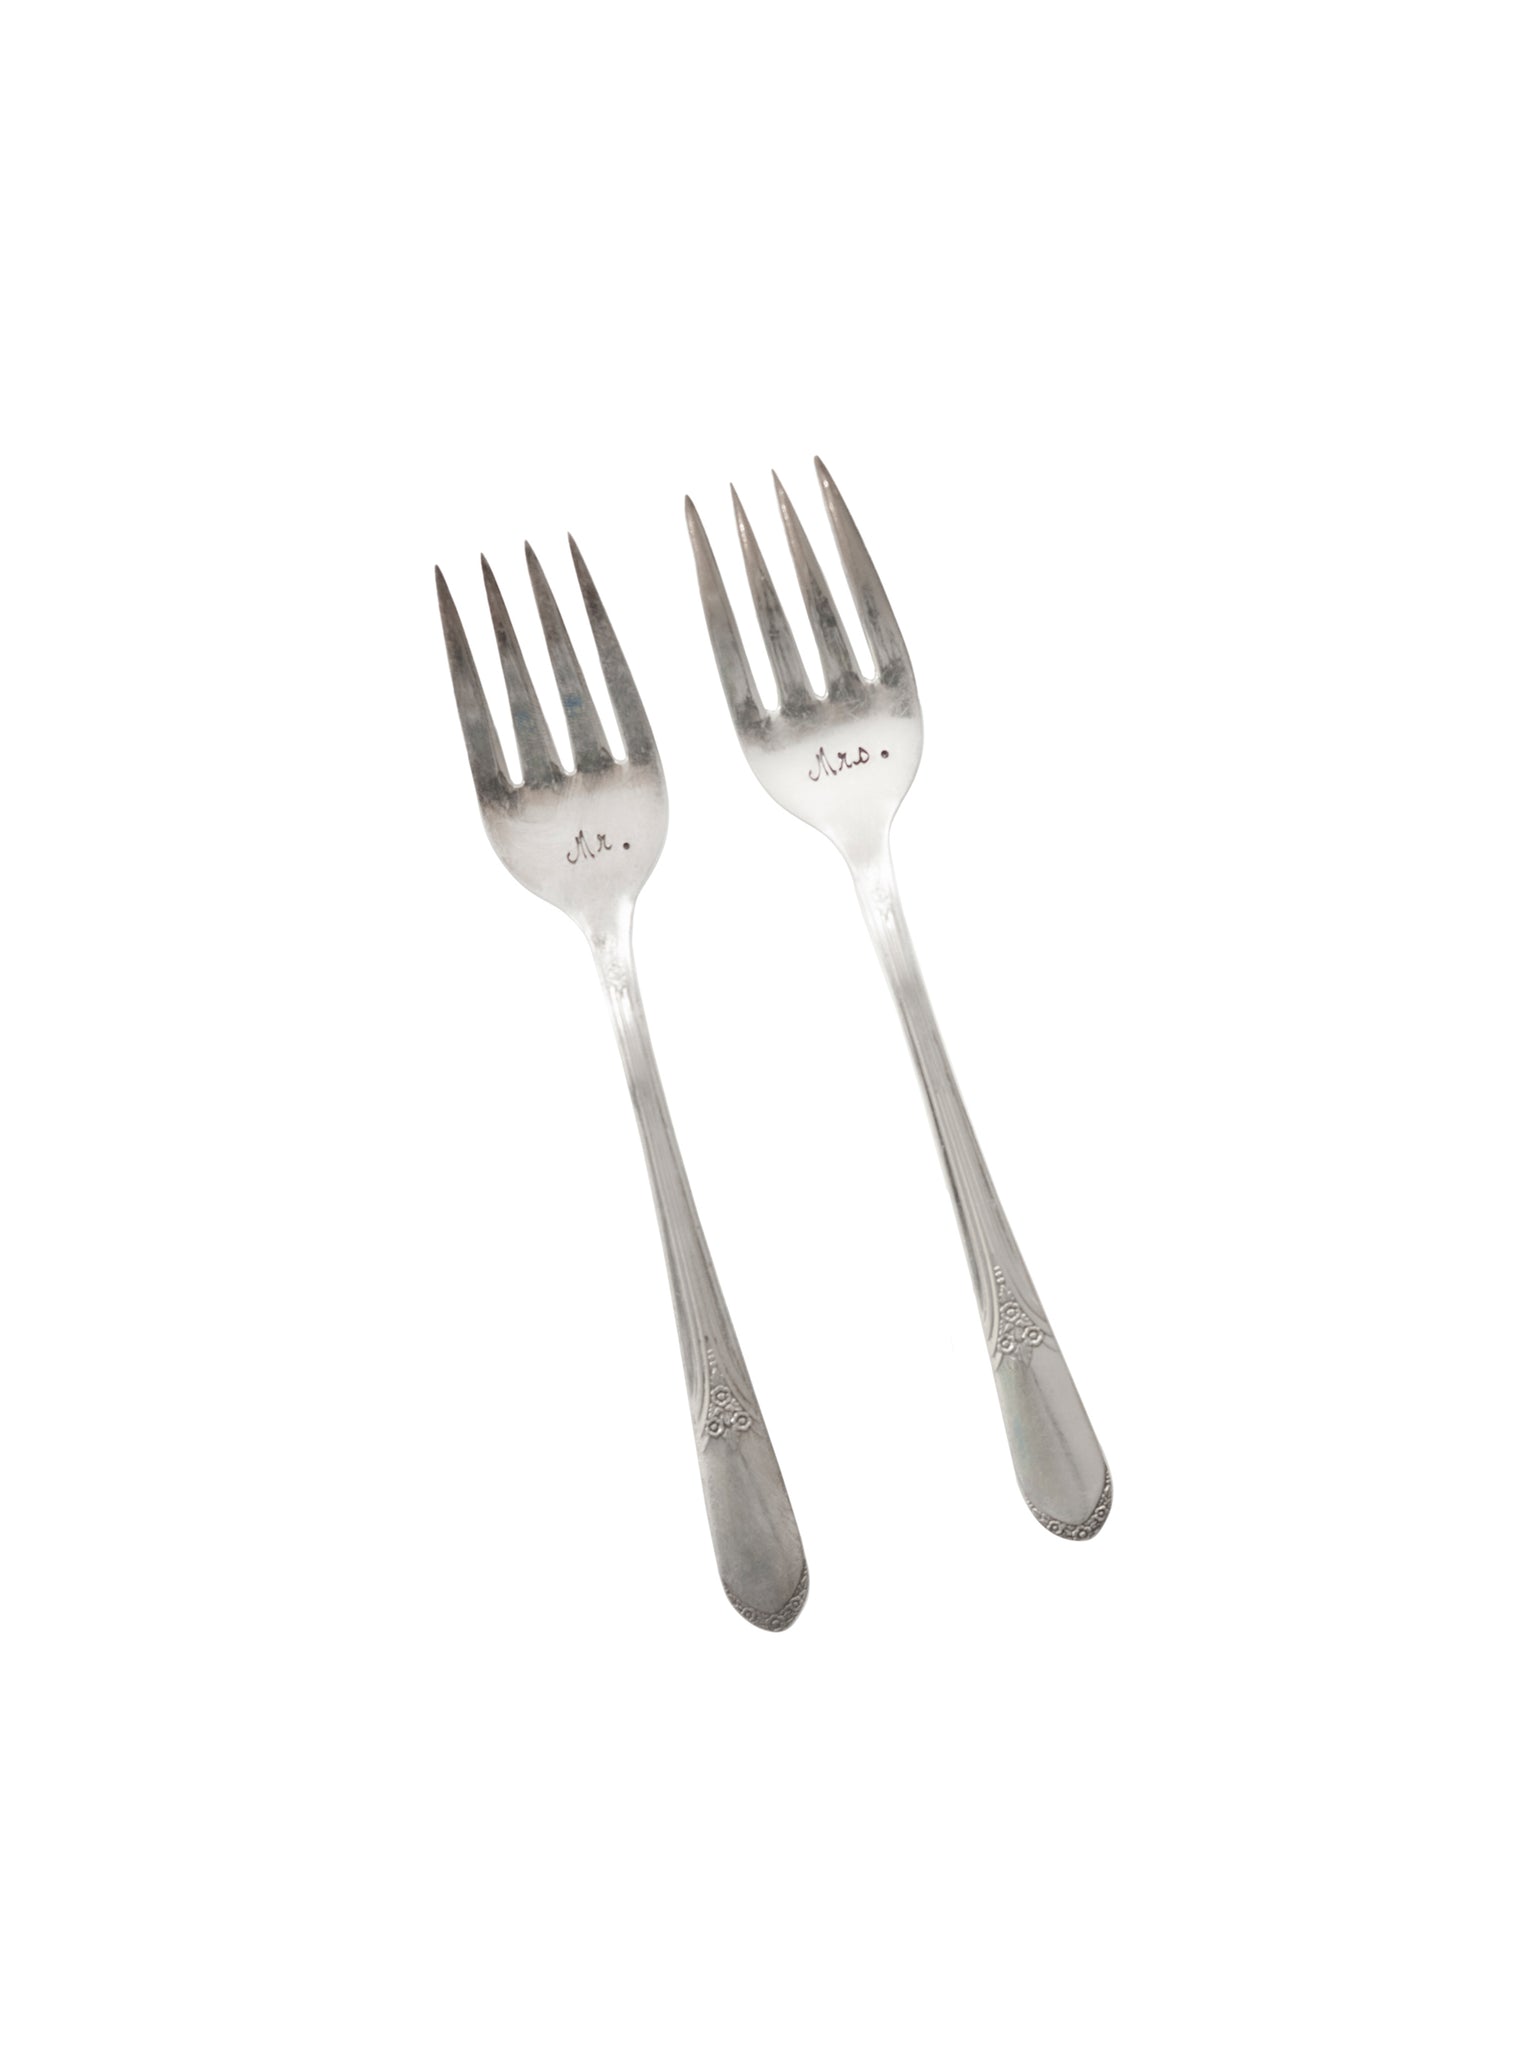 Vintage Mr. & Mrs. Vintage Silver Plate Forks